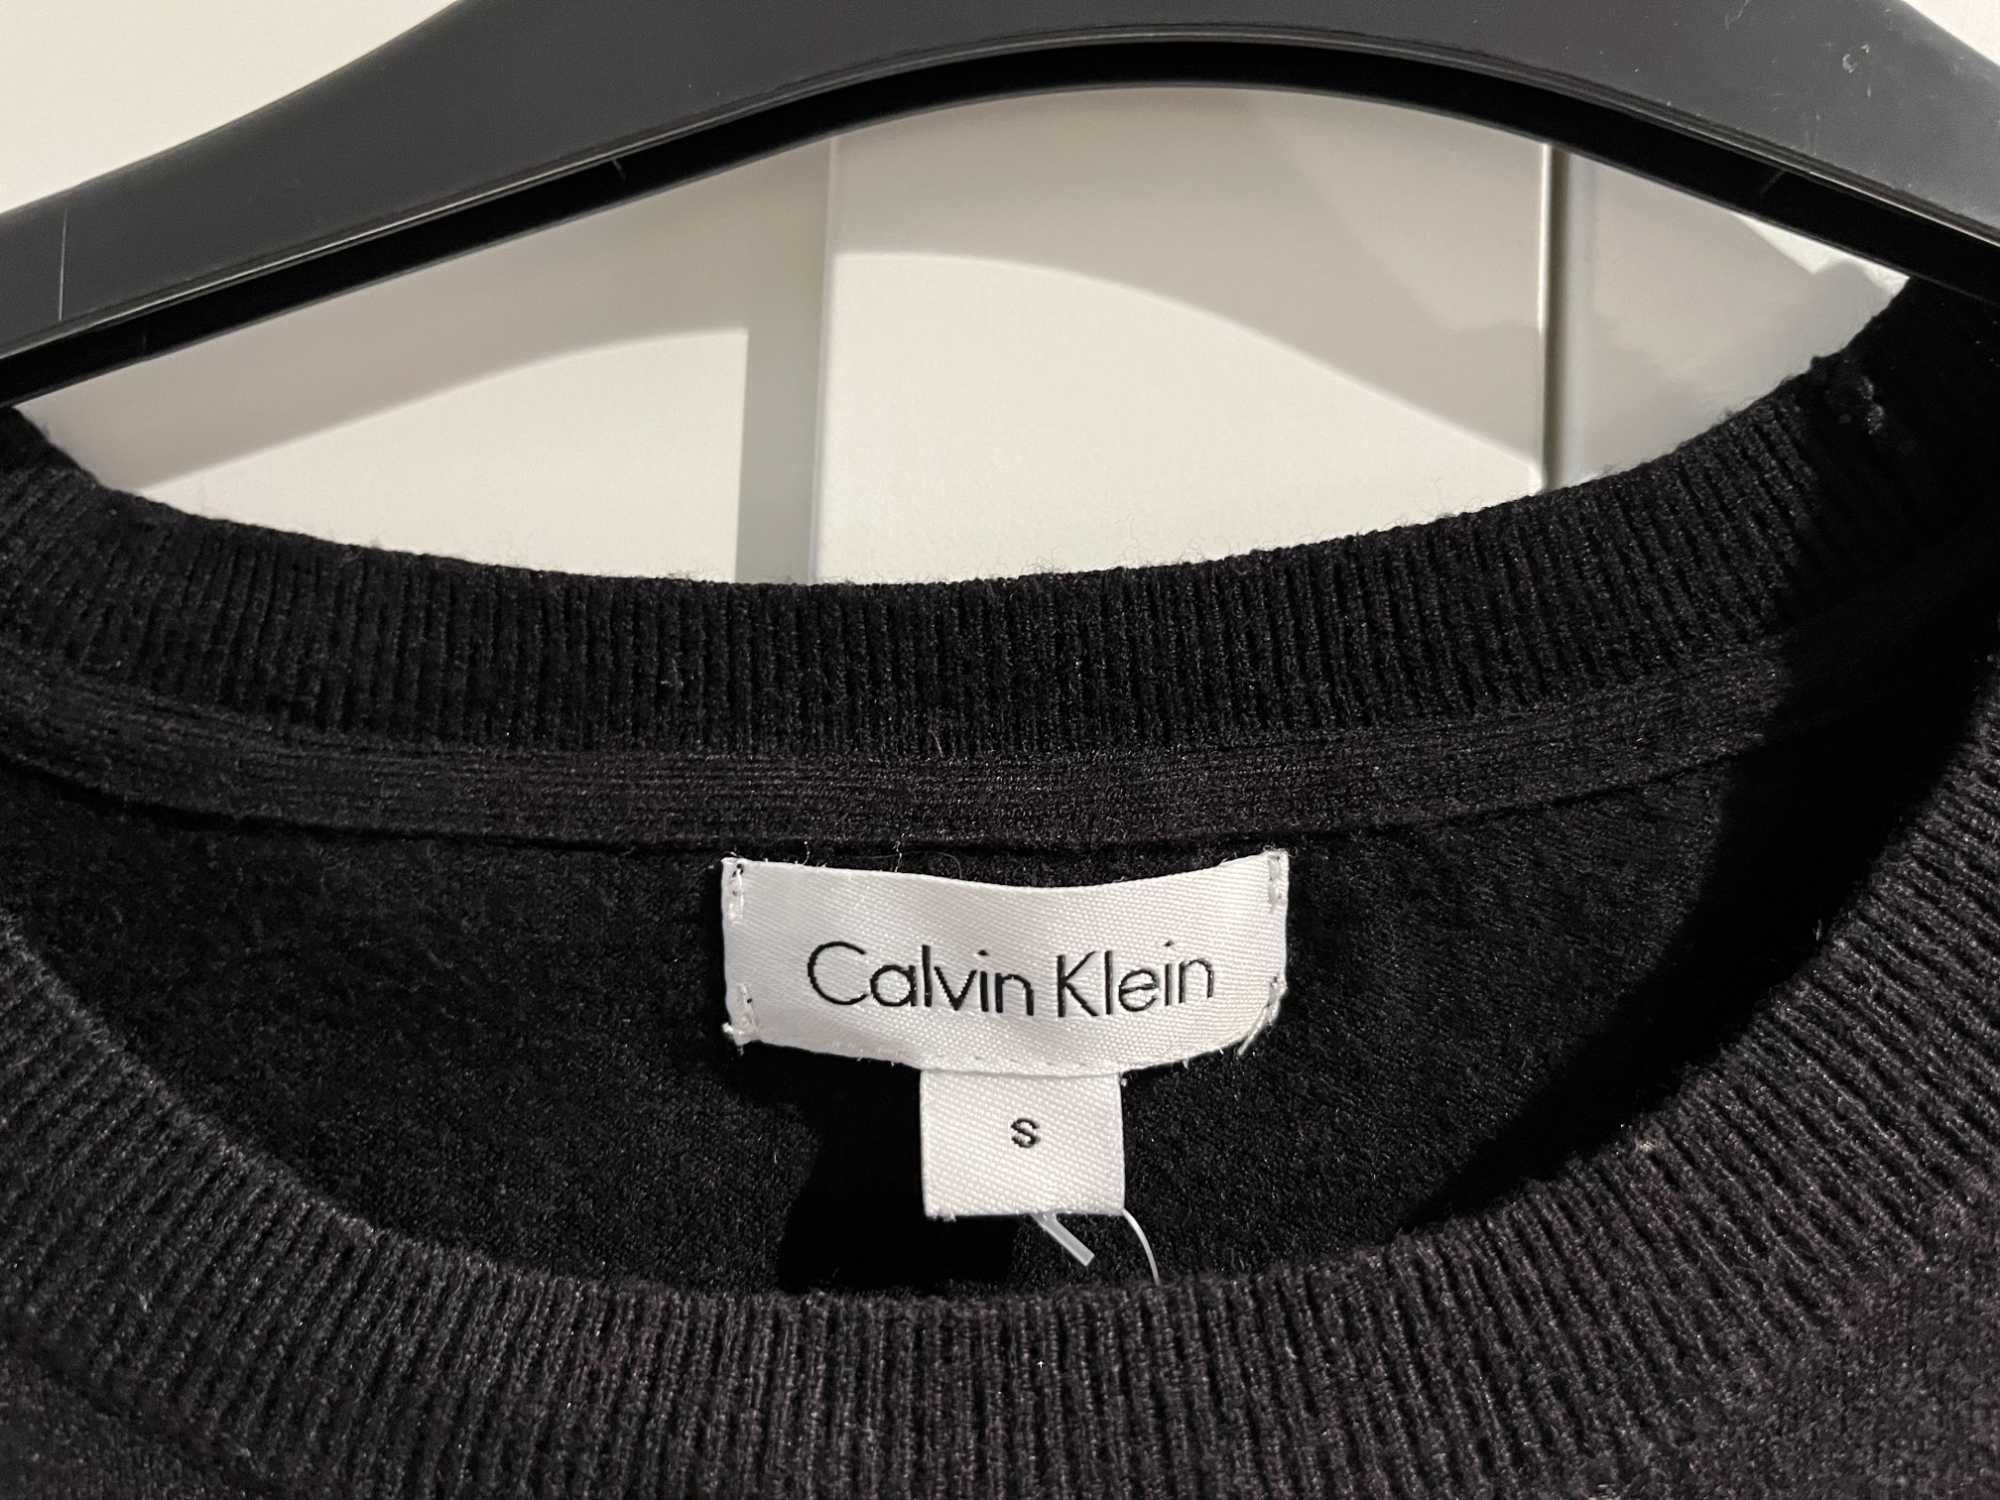 Bluza dama Calvin Klein marimea S